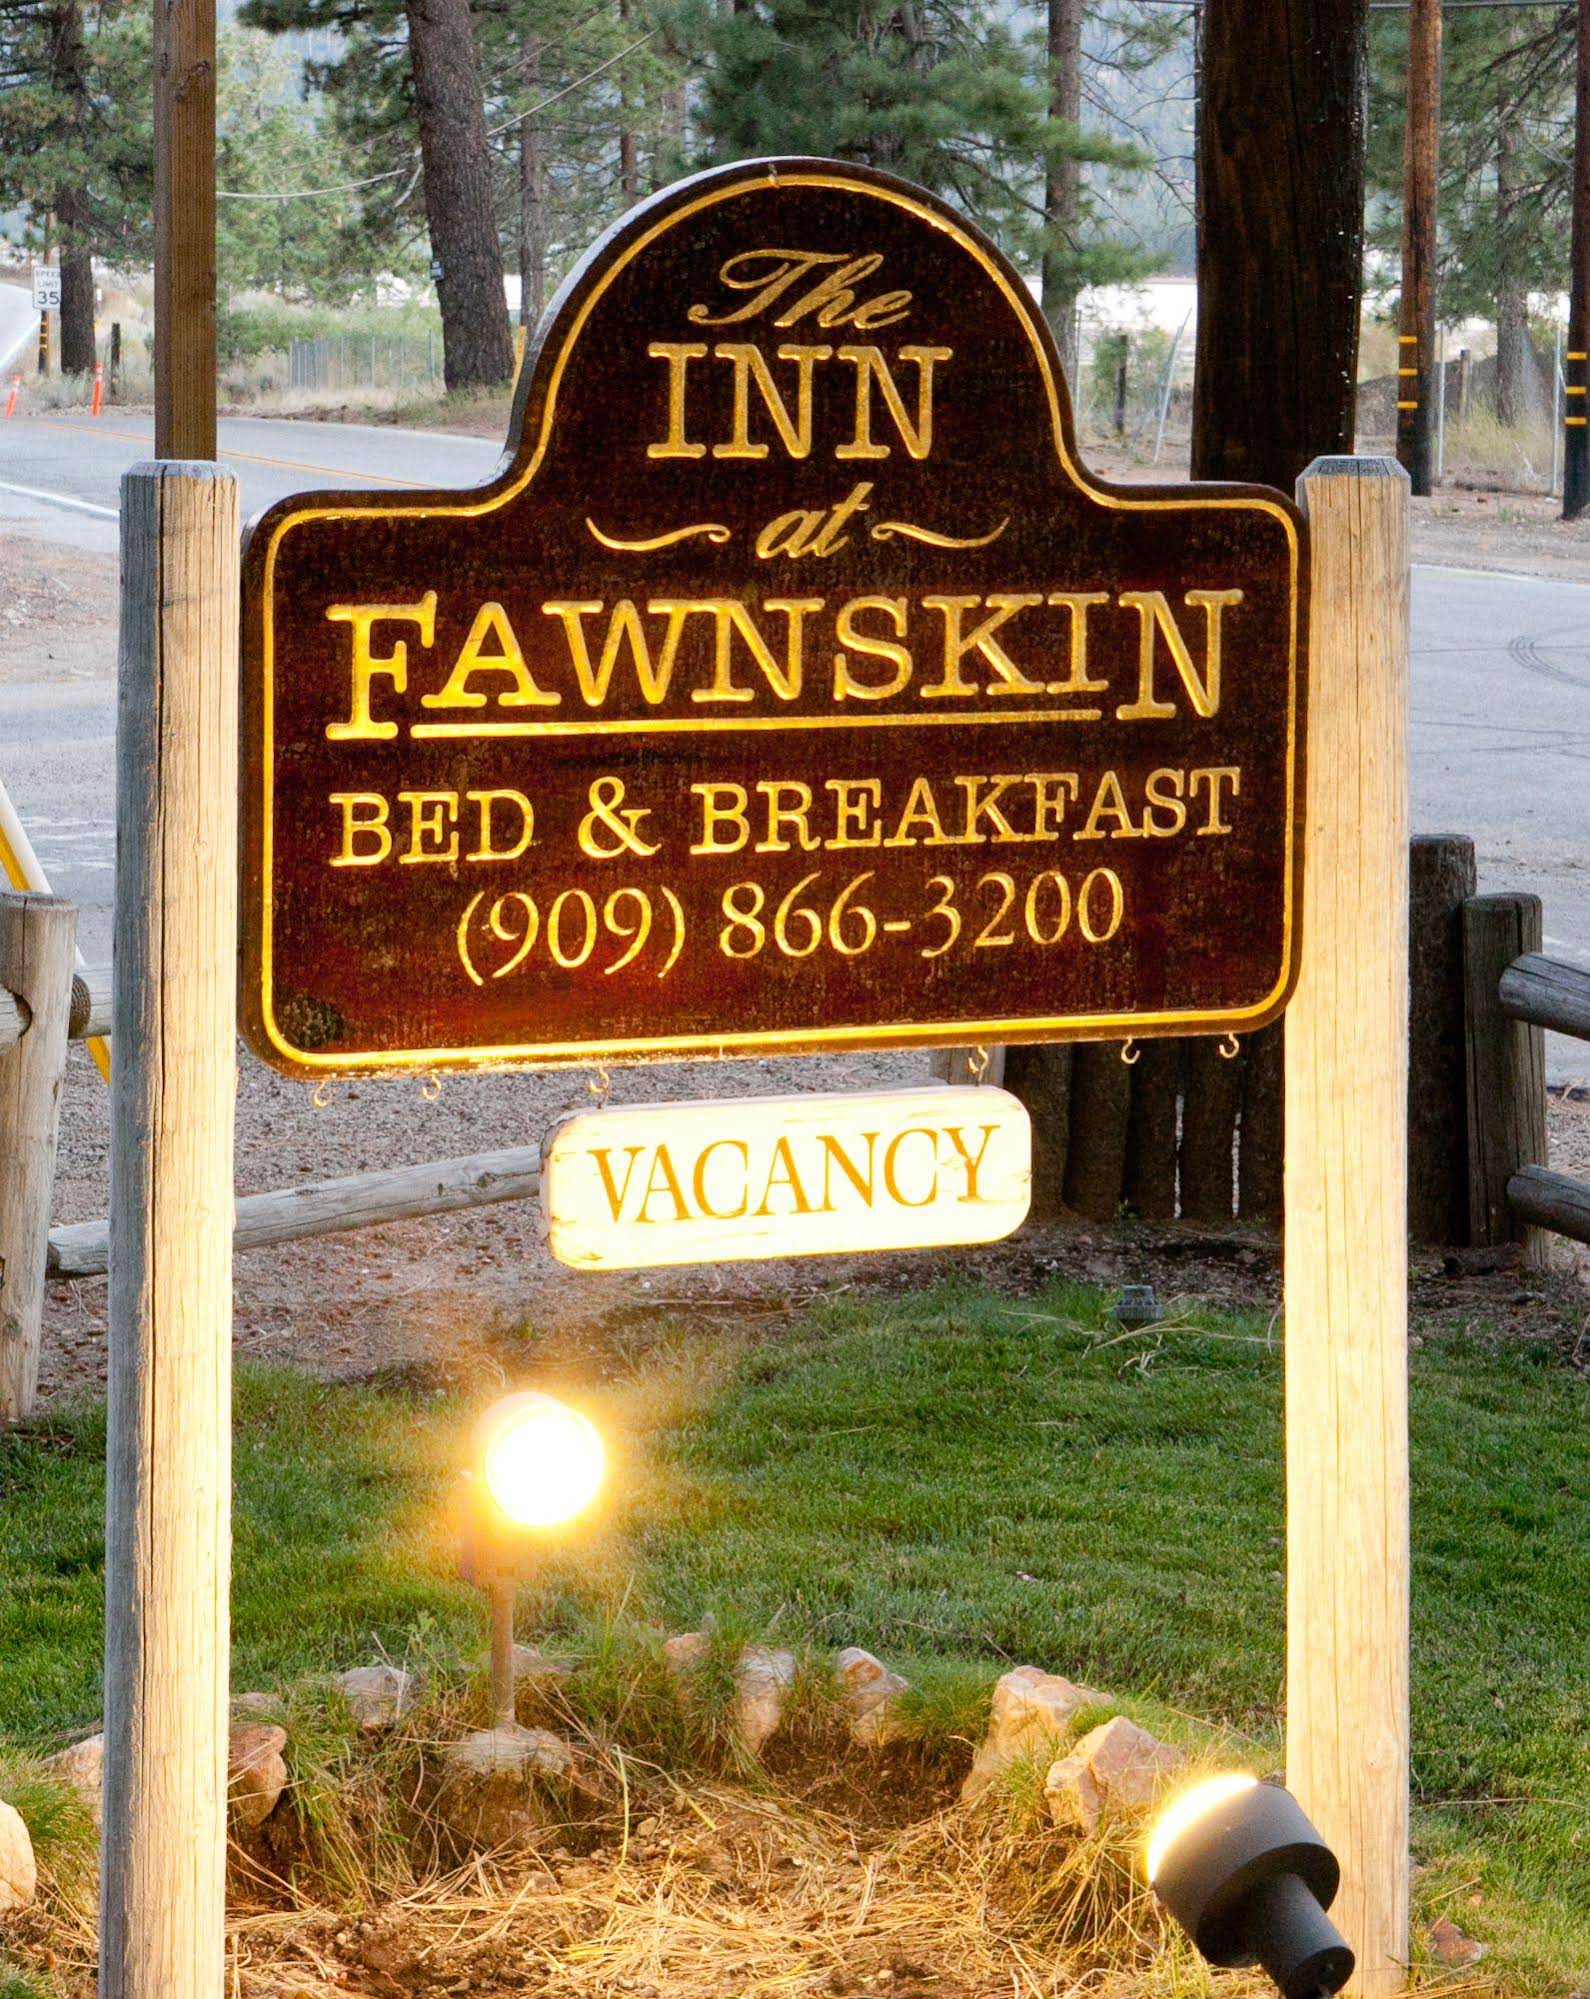 The Inn at Fawnskin